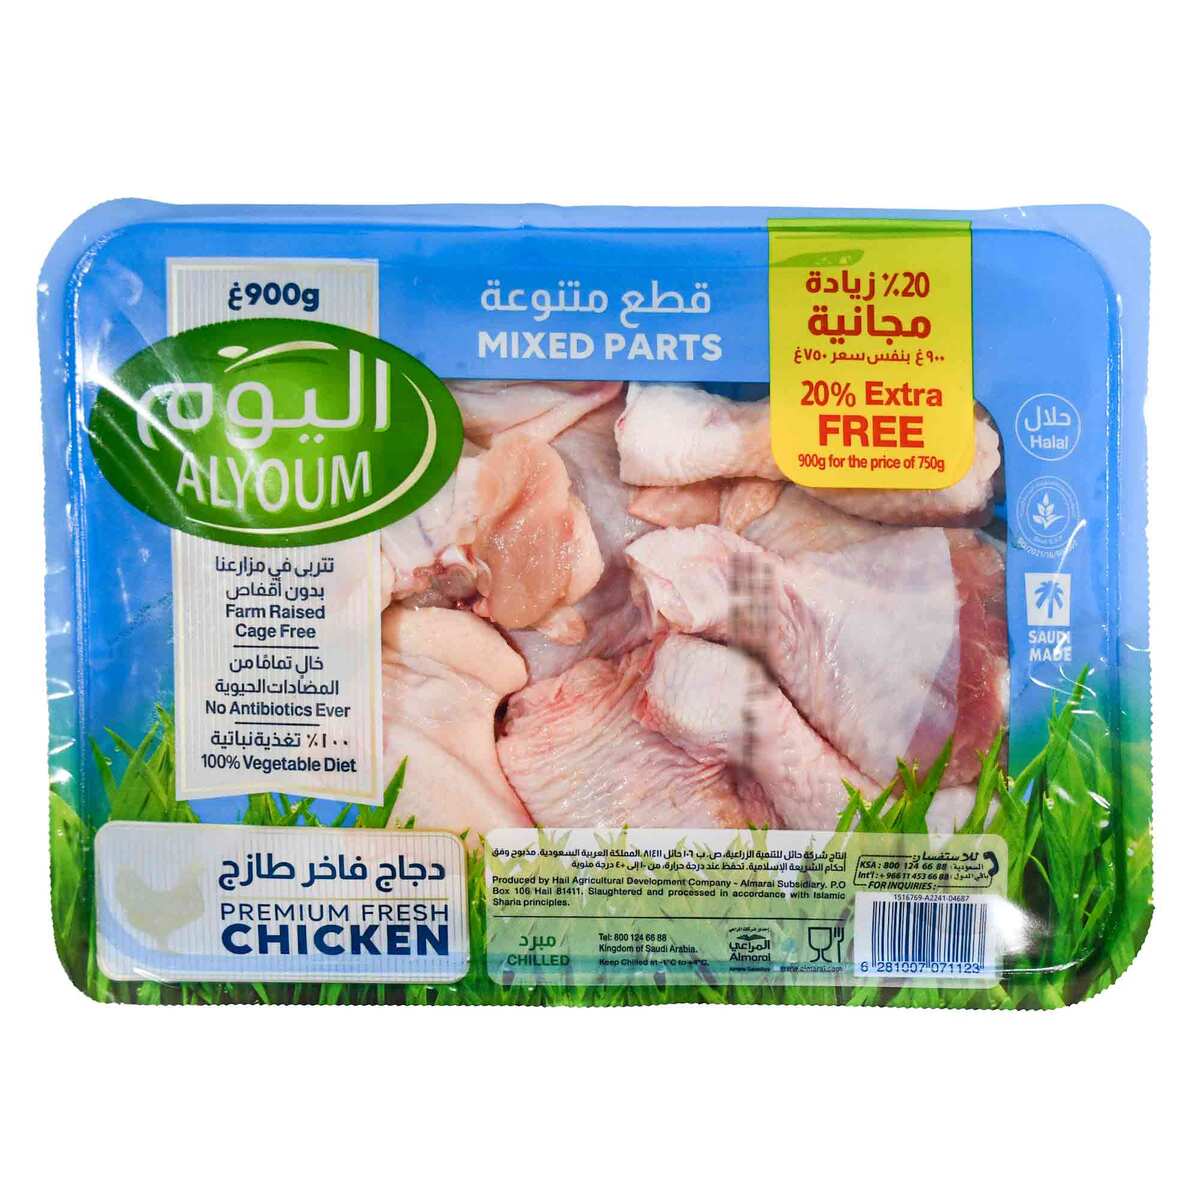 Alyoum Fresh Chicken Mix Parts Value Pack 900 g